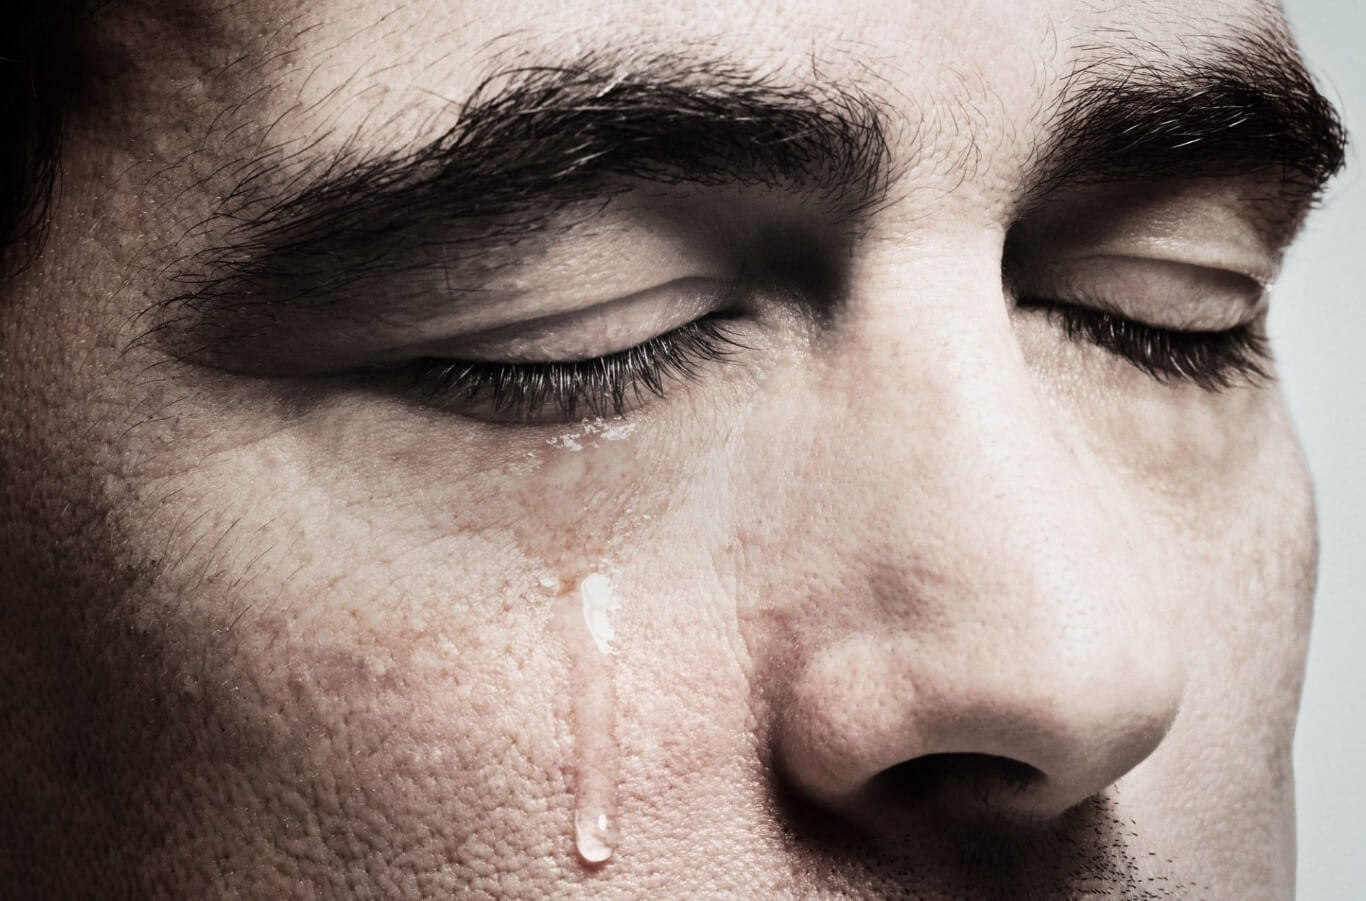 Какие типы слез бывают. Слезы человека бывают базальными, эмоциональными и рефлекторными. Изображение: iflscience.com. Фото.